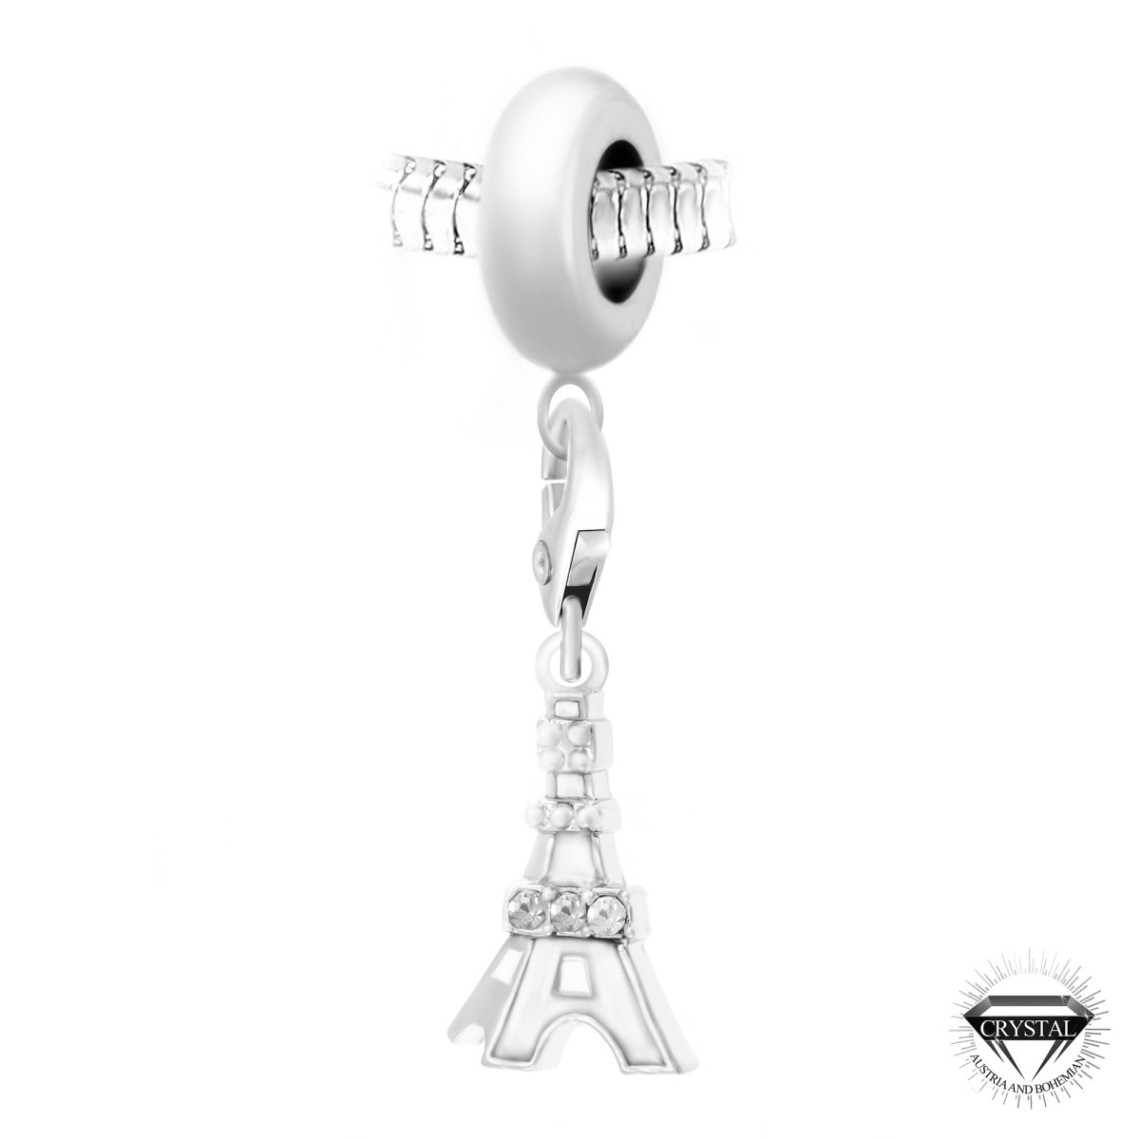 So Charm Bijoux Charm perle Tour Eiffel blanche orné de cristaux Swarovski par SC Crystal Paris® BEA0044+CH0186-argent